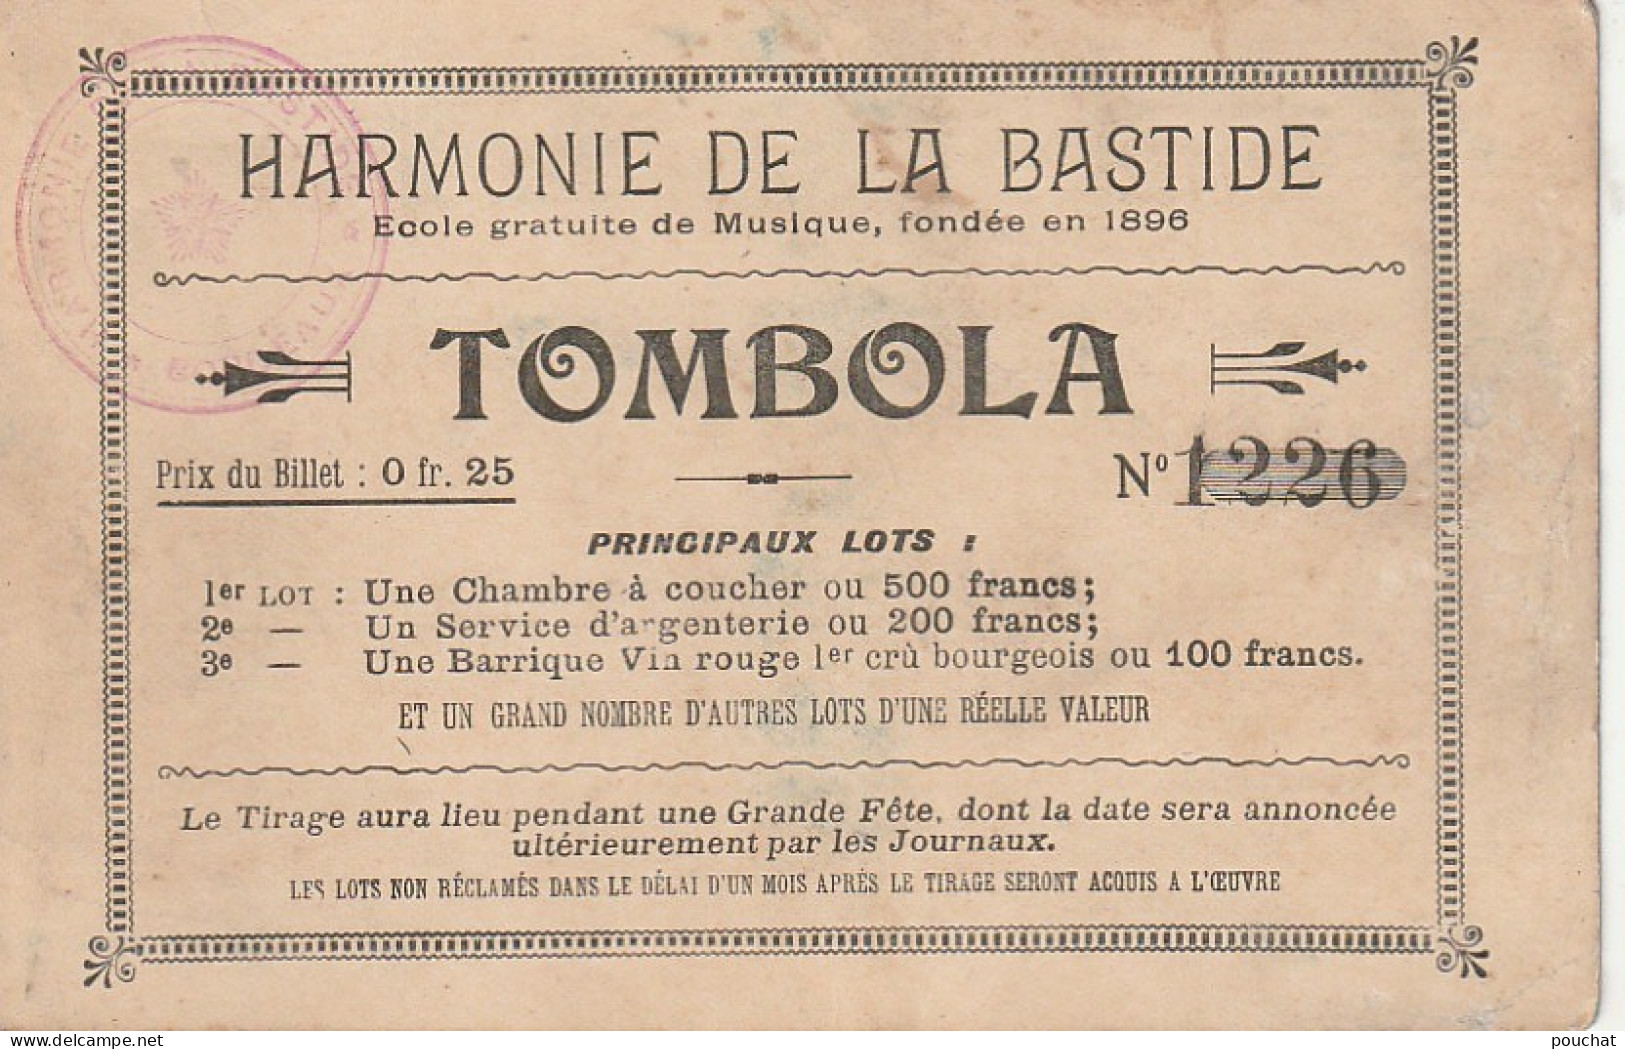 AA+ 101-(75) EXPO. UNIV. DE PARIS 1900 - PALAIS DE L'EDUCATION ET L'ENSEIGNEMENT - TOMBOLA " HARMONIE DE LA BASTIDE "  - Exhibitions